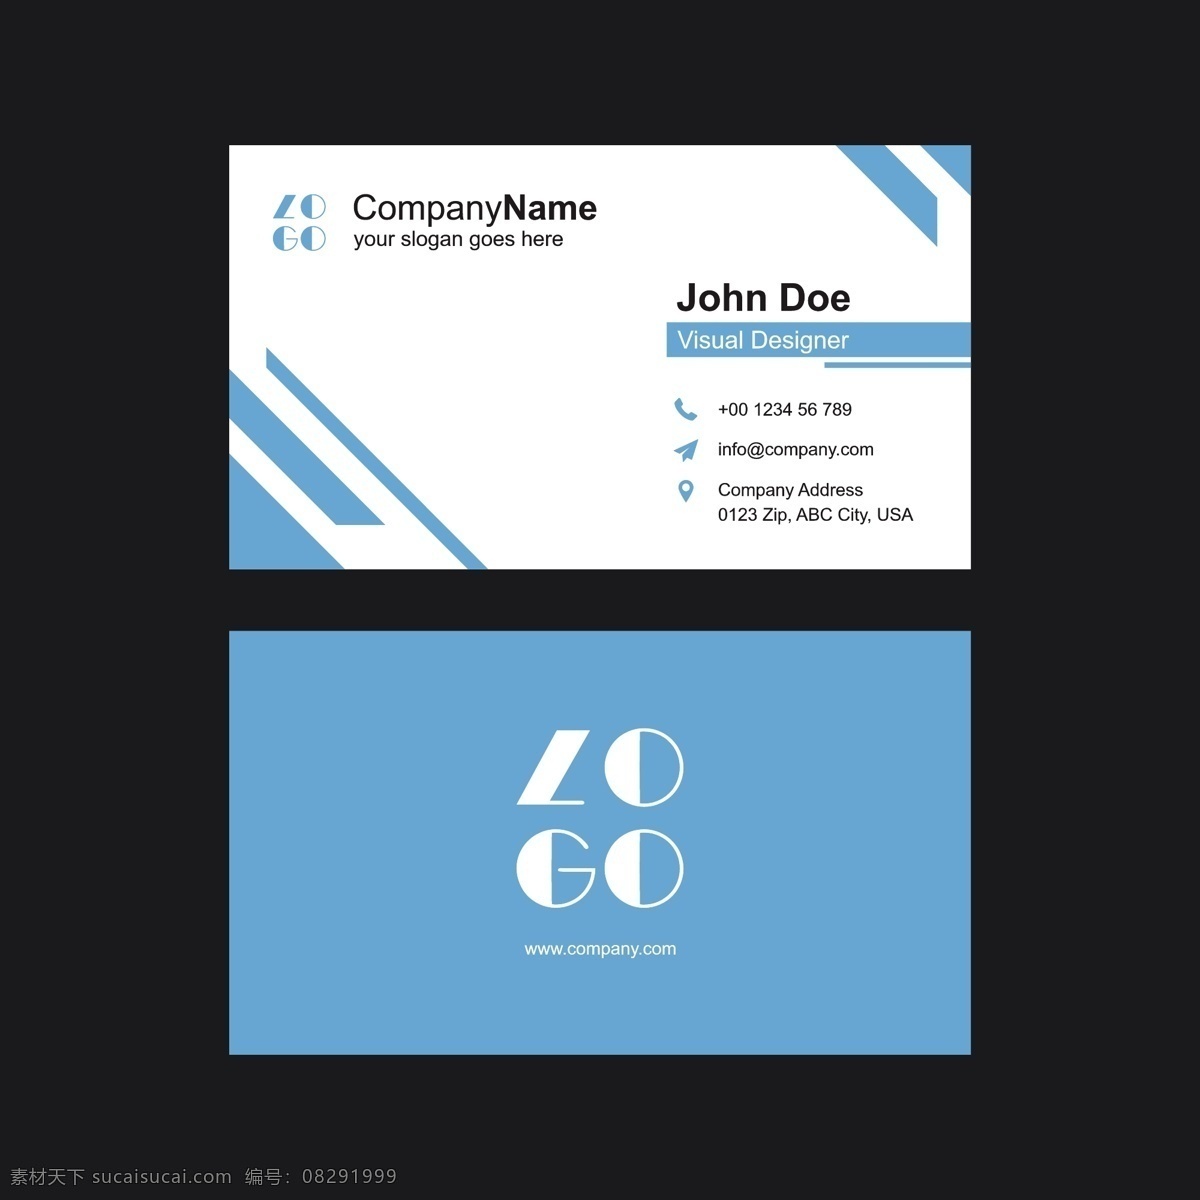 蓝色名片模板 标志 名片 商务 抽象 办公室 模板 蓝色 演示 企业 公司 抽象的标志 现代 文具 企业身份 身份 身份证 企业标志 公司标志 标志模板